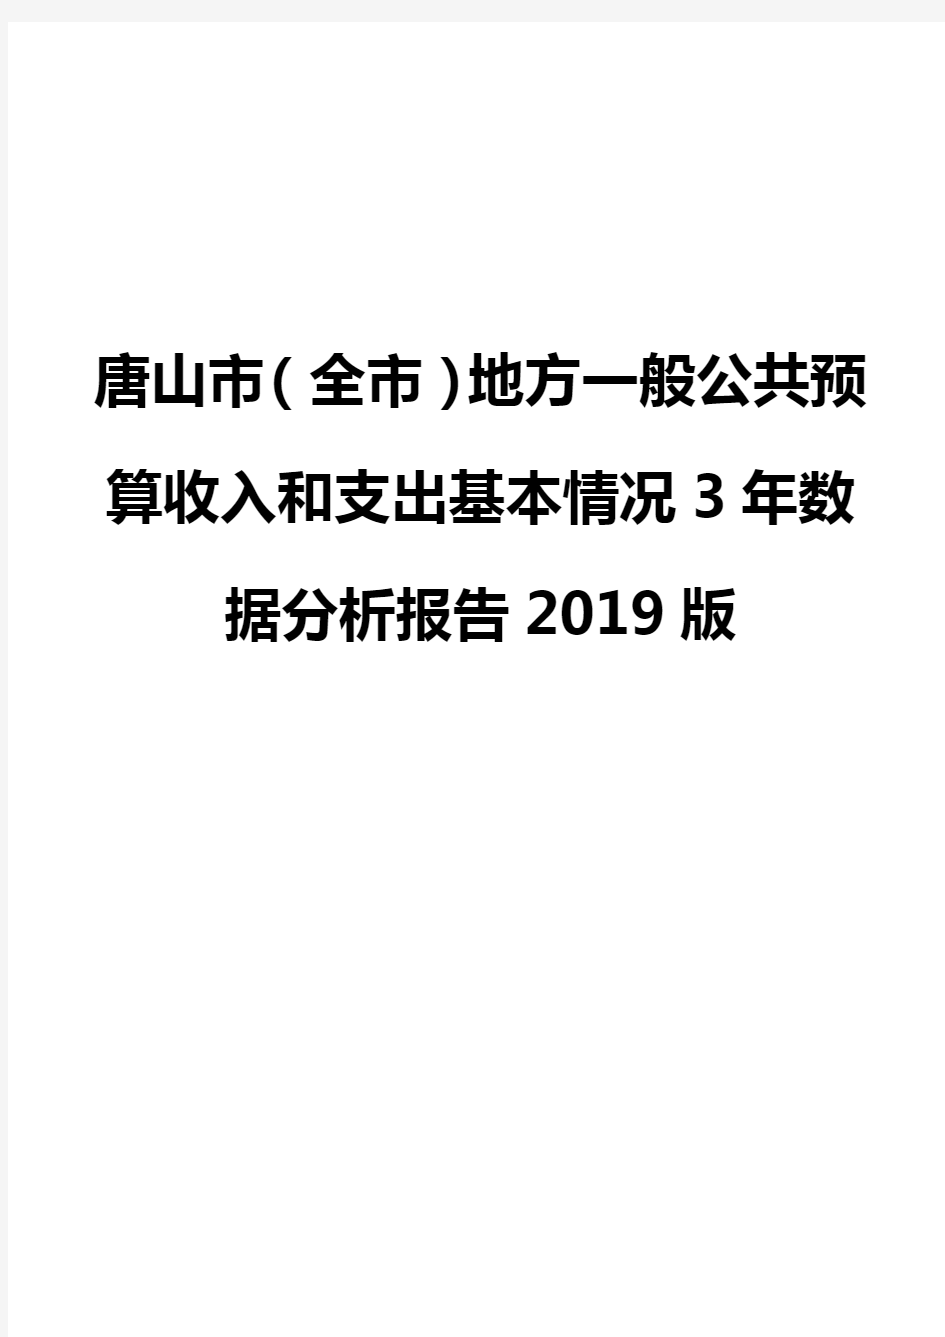 唐山市(全市)地方一般公共预算收入和支出基本情况3年数据分析报告2019版